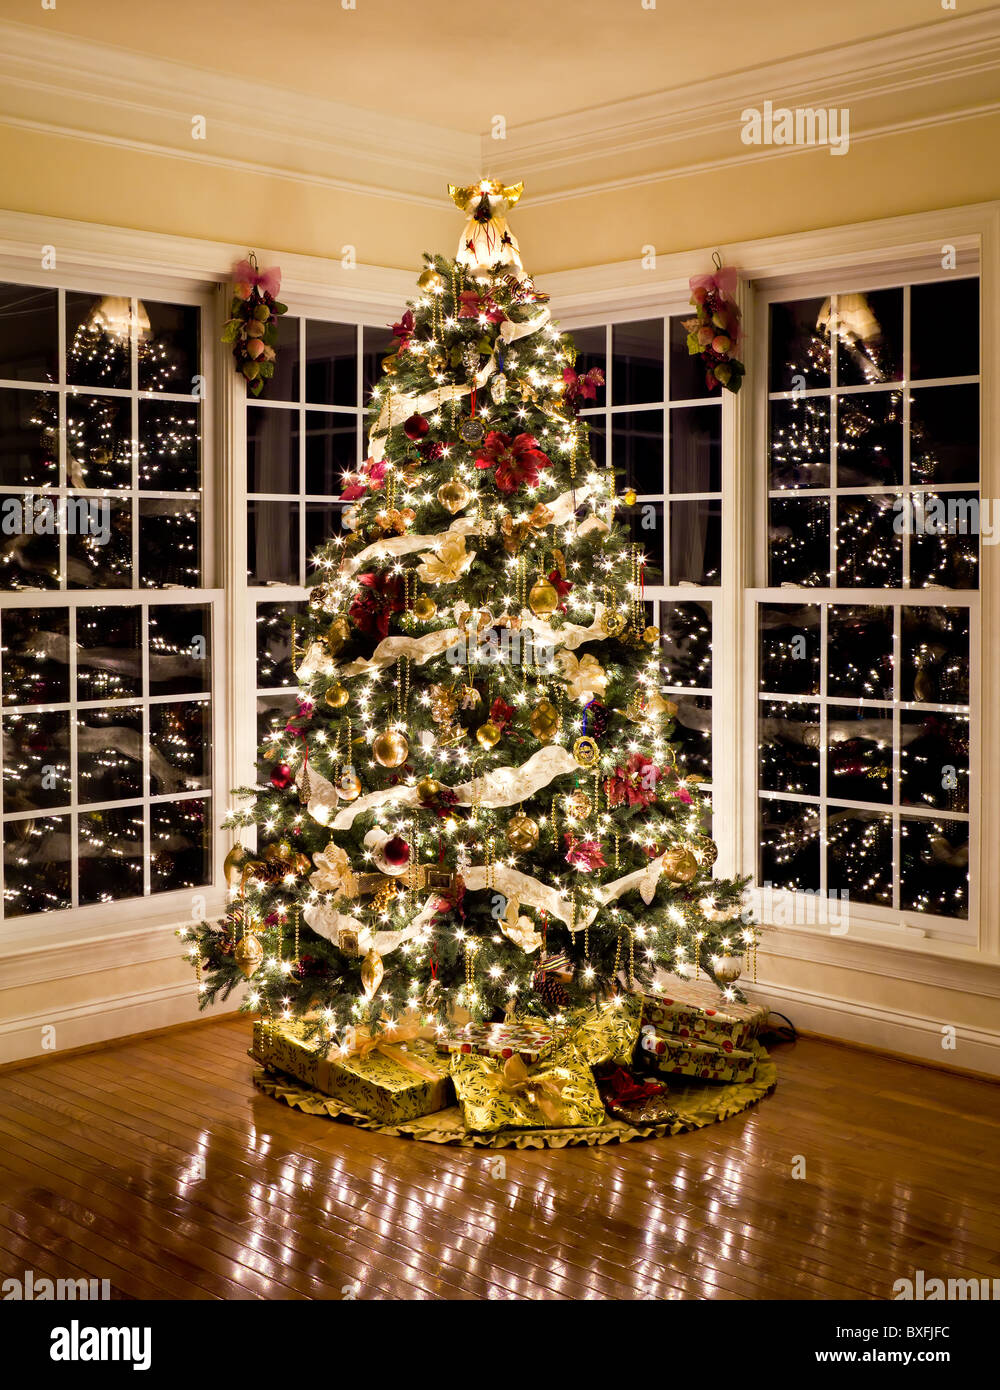 Weihnachtsbaum mit Geschenken und Licht reflektiert in Windows um den Baum in eine heimische Wohnzimmer Stockfoto